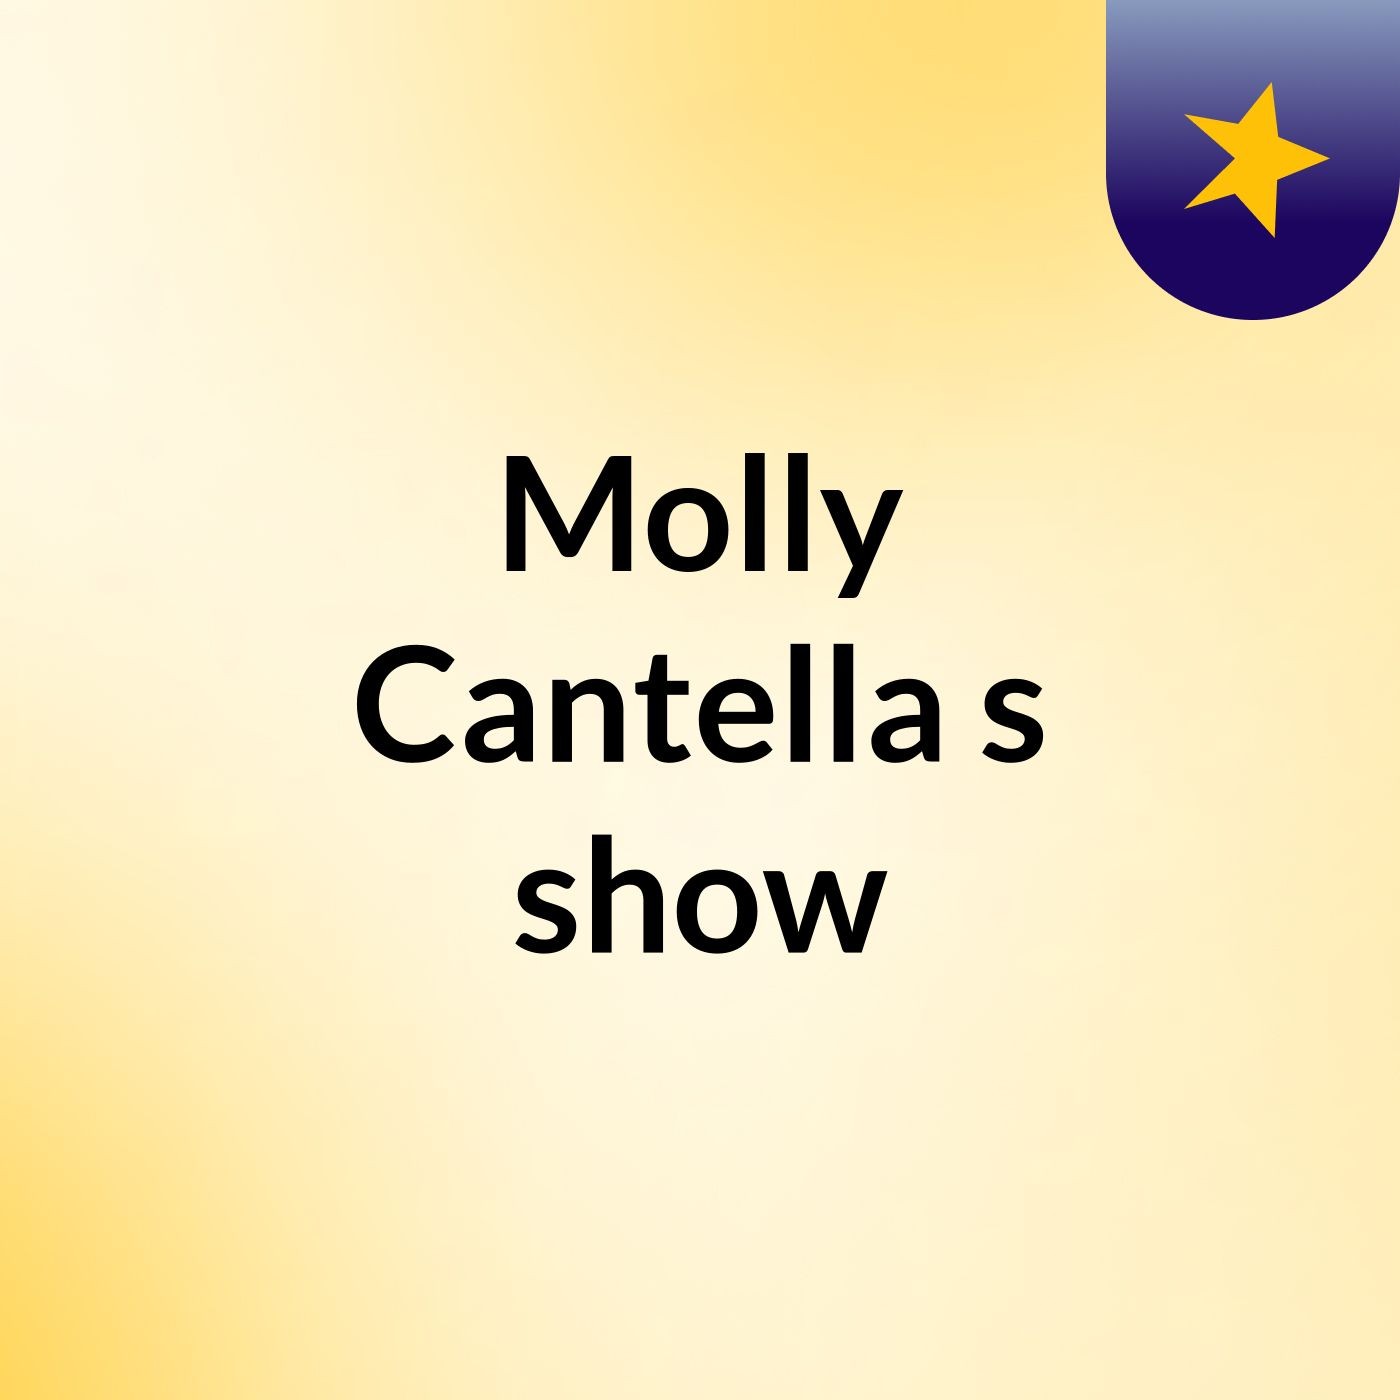 Episode 48 - Molly Cantella's show